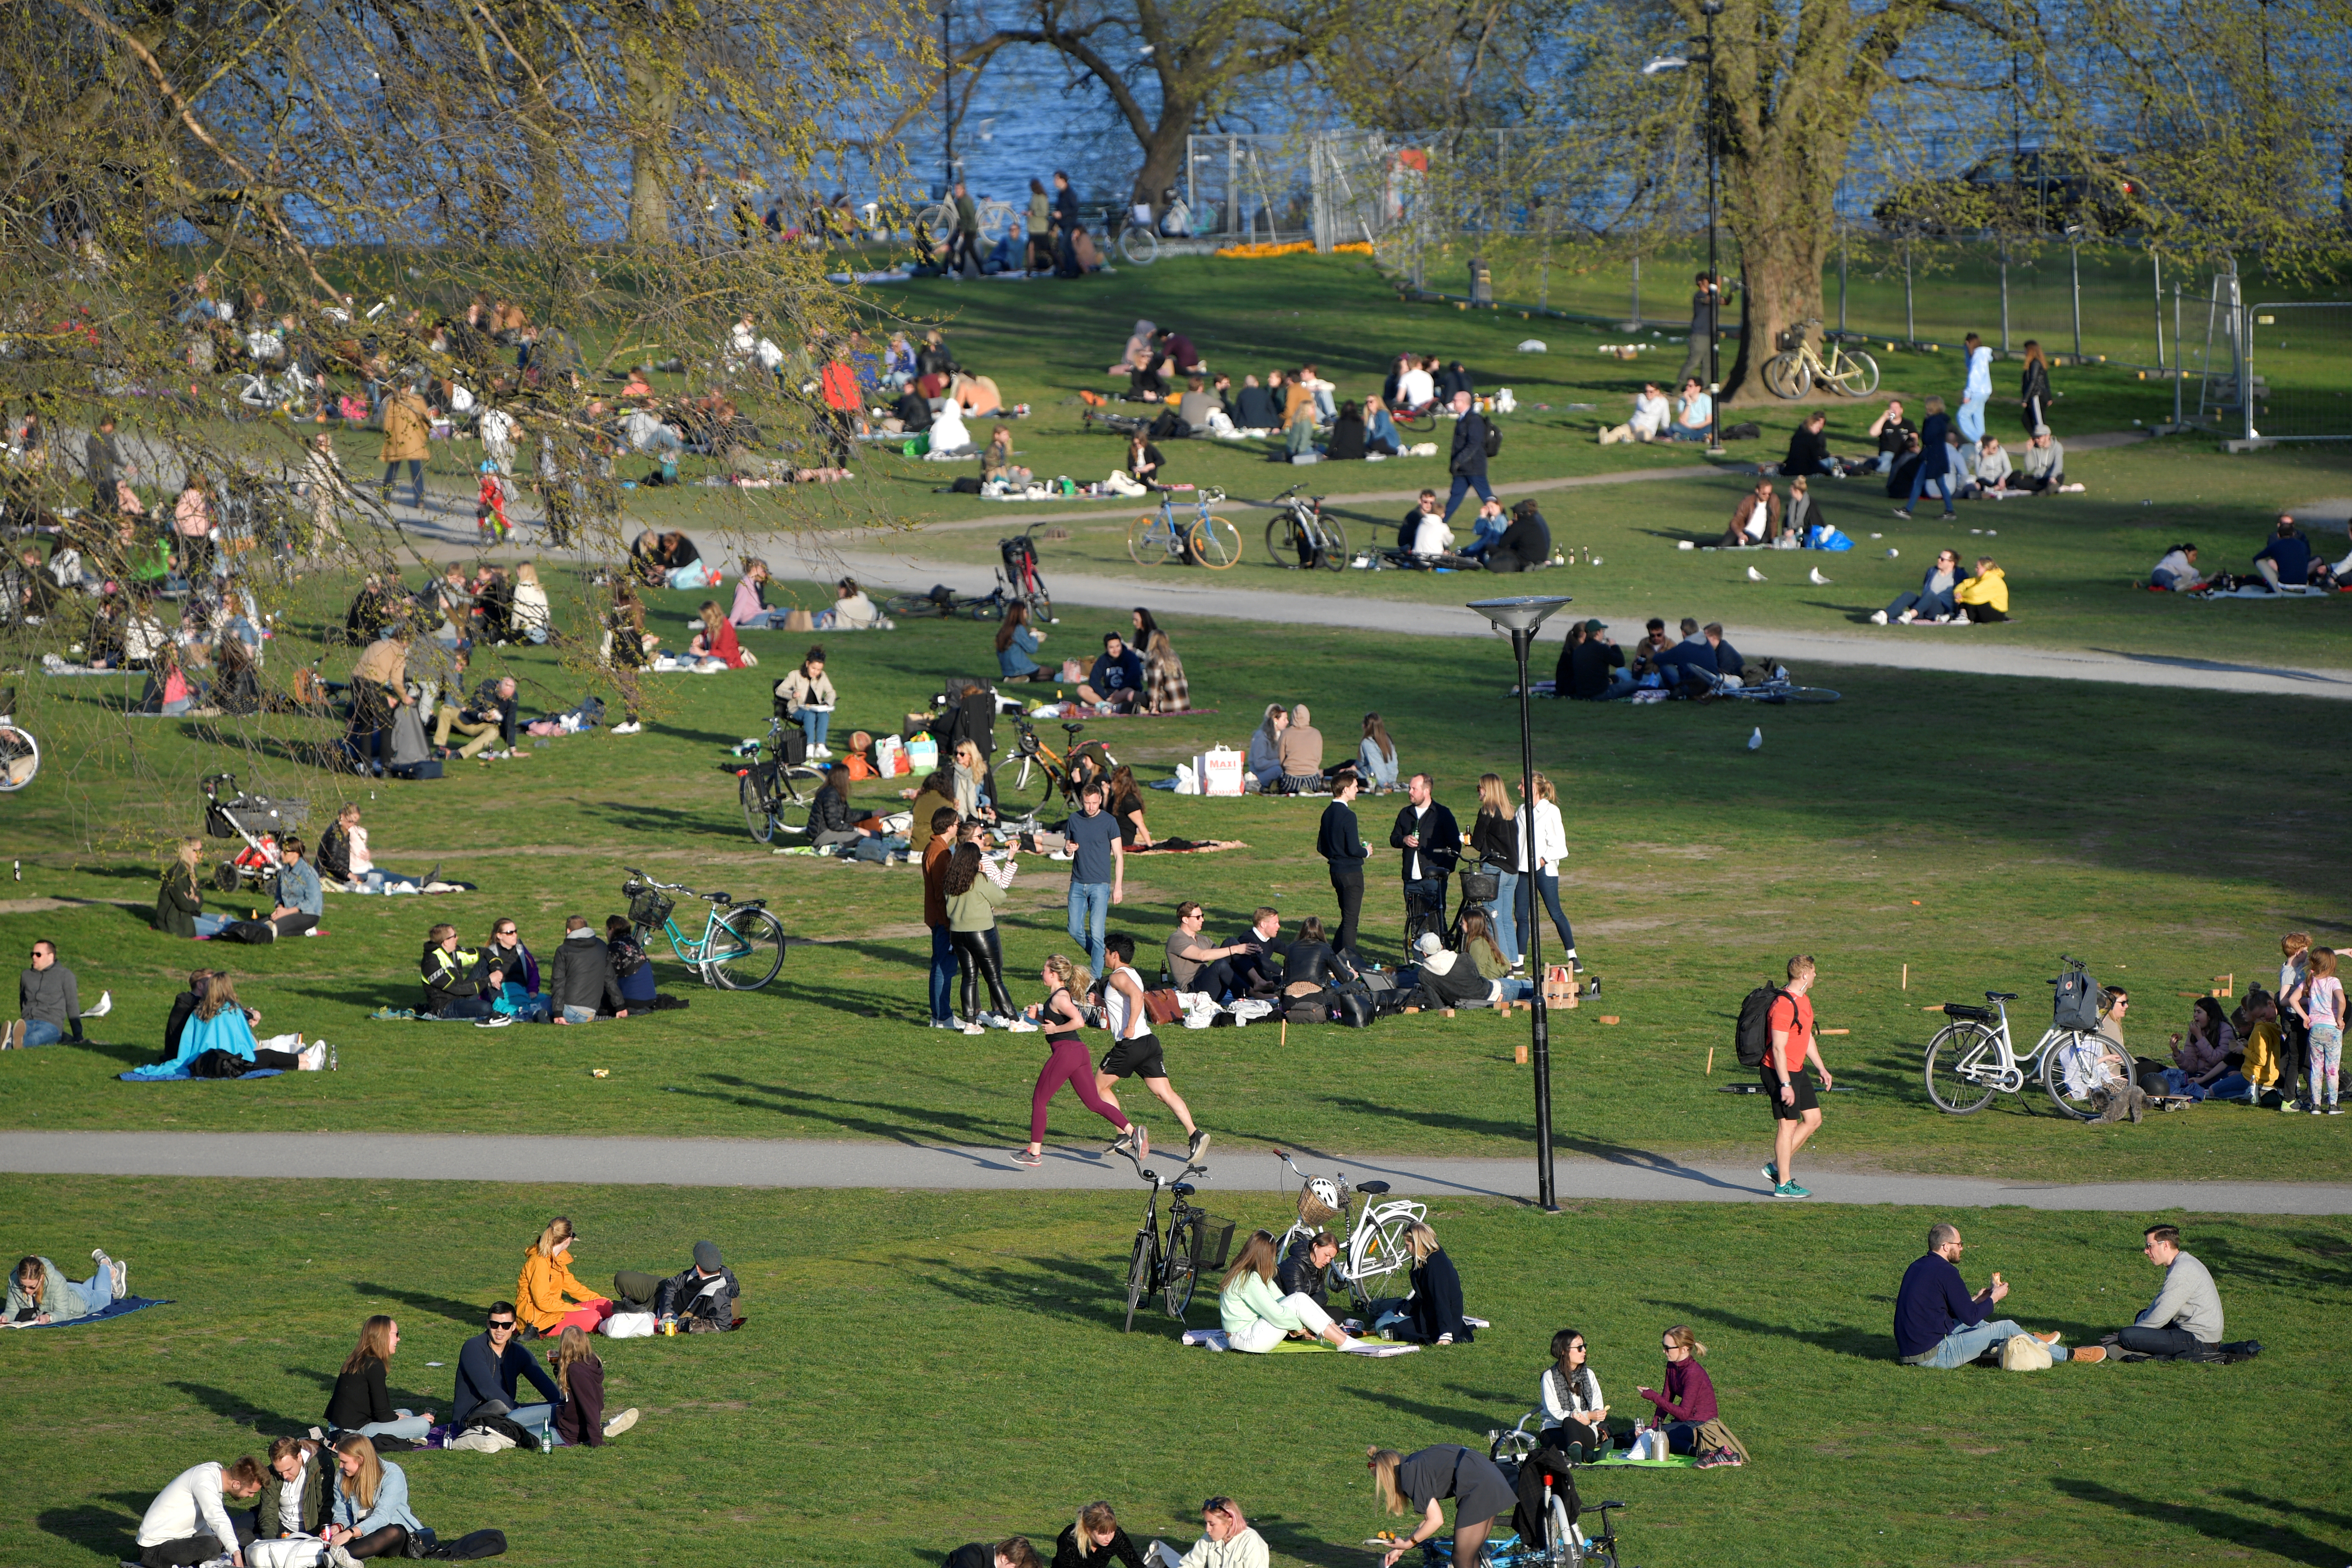 En su mayoría los suecos respetan el distanciamiento social (TT News Agency/Anders Wiklund via REUTERS)